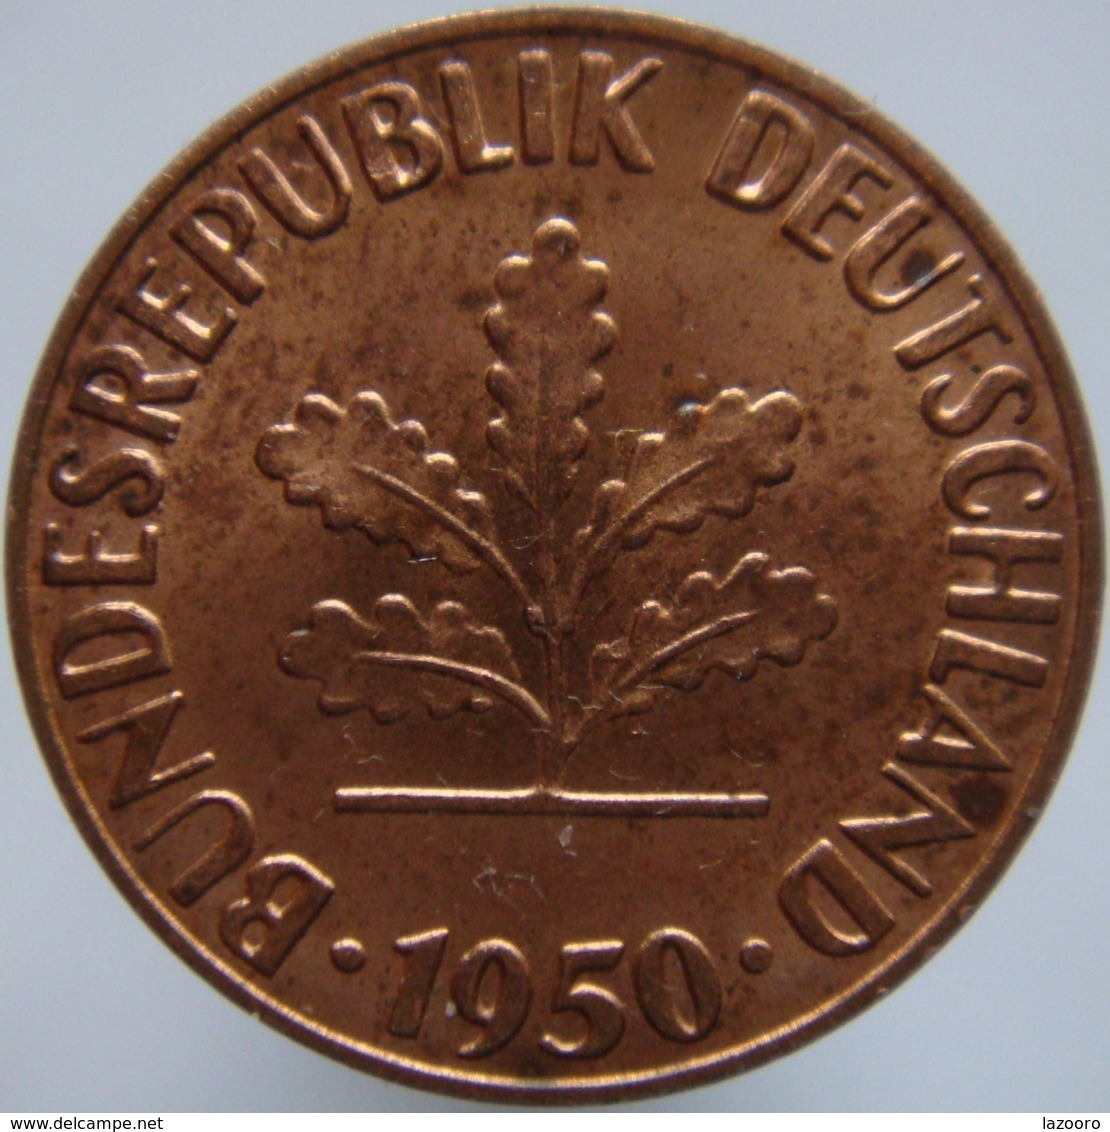 Germany 1 Pfennig 1950 F UNC - 1 Pfennig